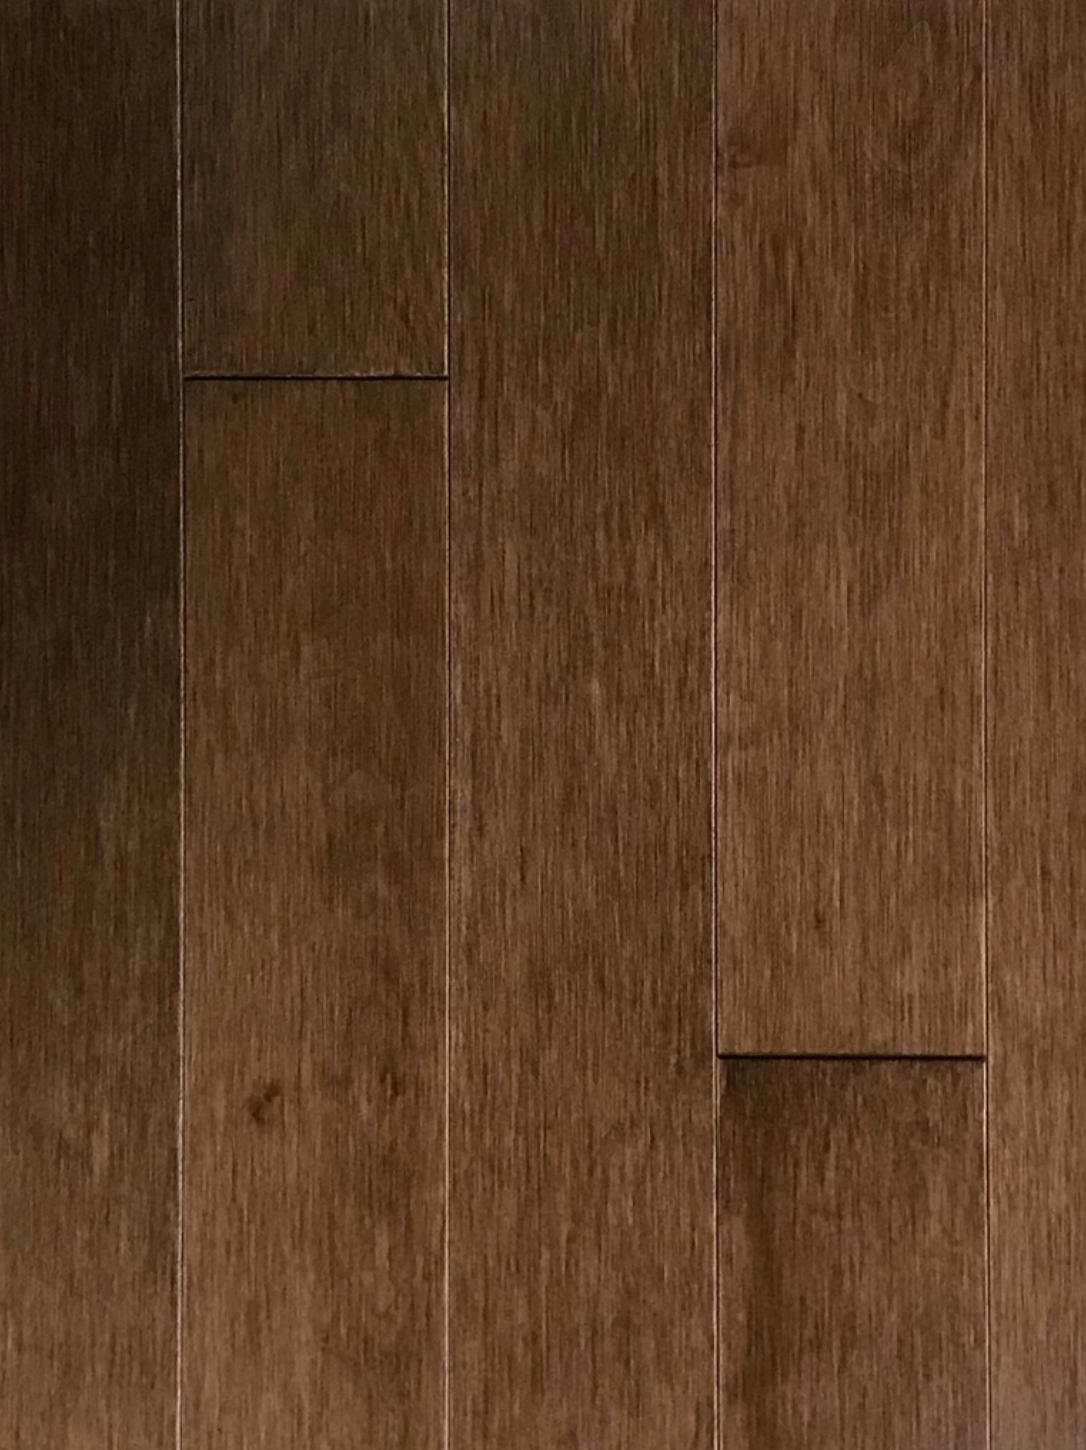 cinnamon hardwood flooring